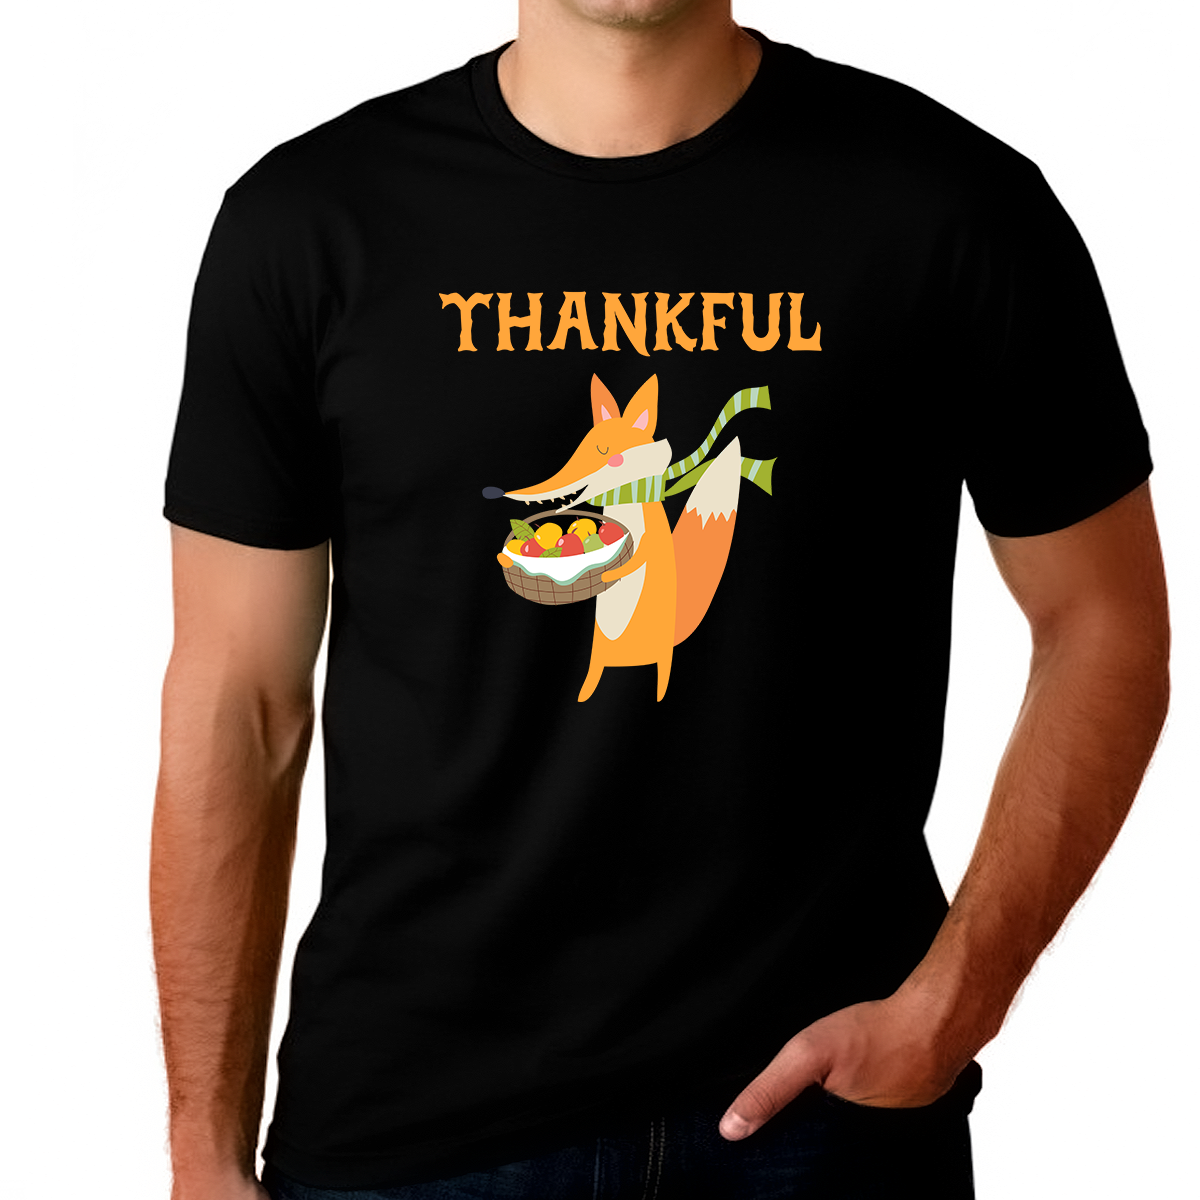 Mens Thanksgiving Shirt Funny Fox Shirt Big and Tall Fall Shirt Funny Thanksgiving Shirts for Men Plus Size